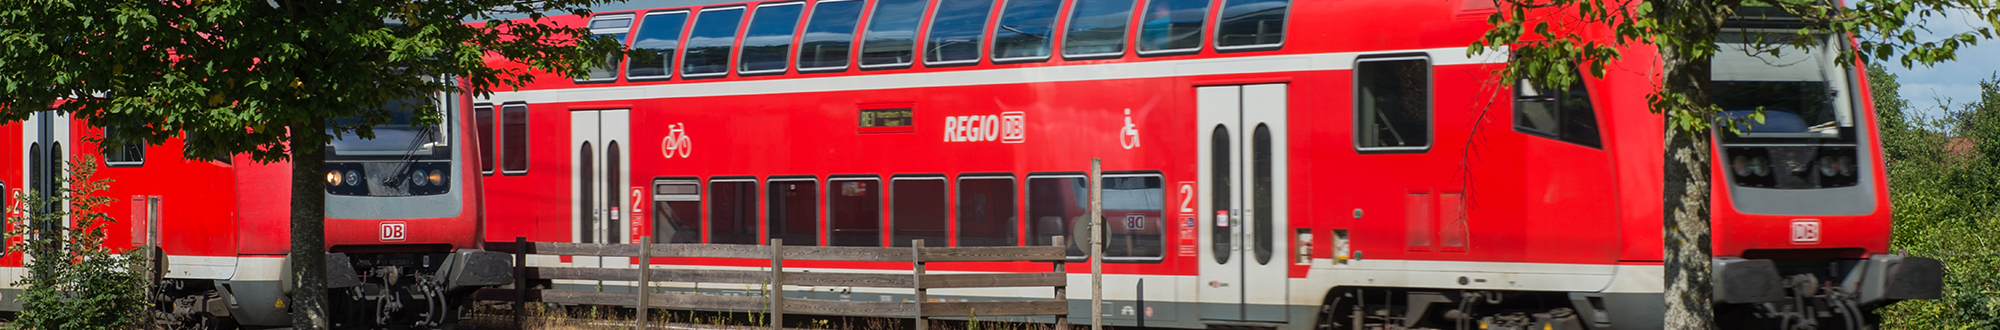 roter Zug der DB Regio